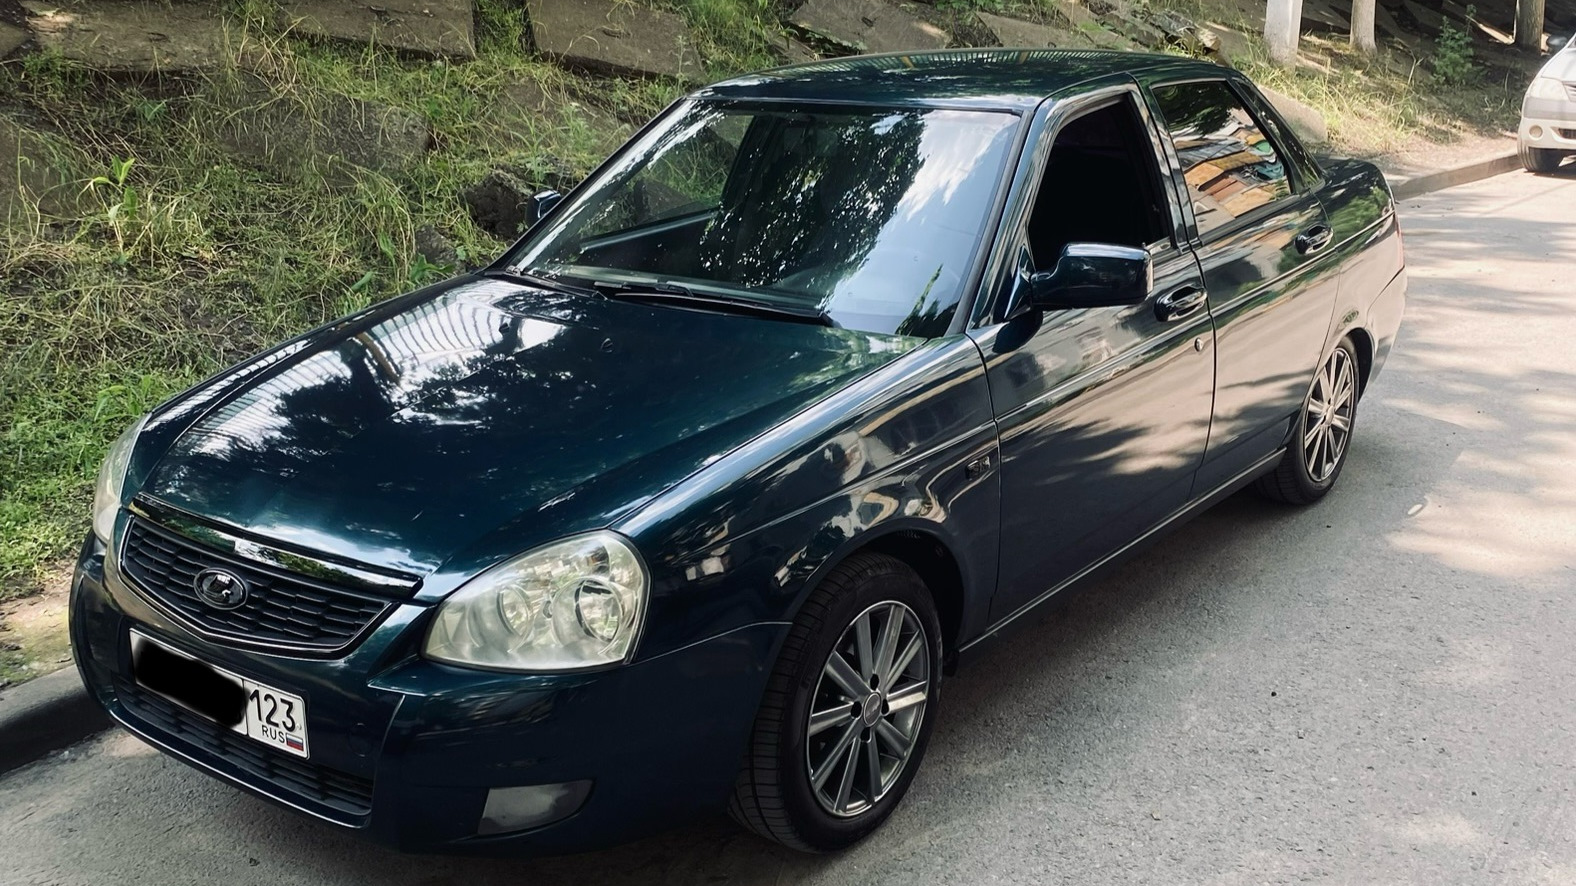 Lada Приора седан 1.6 бензиновый 2007